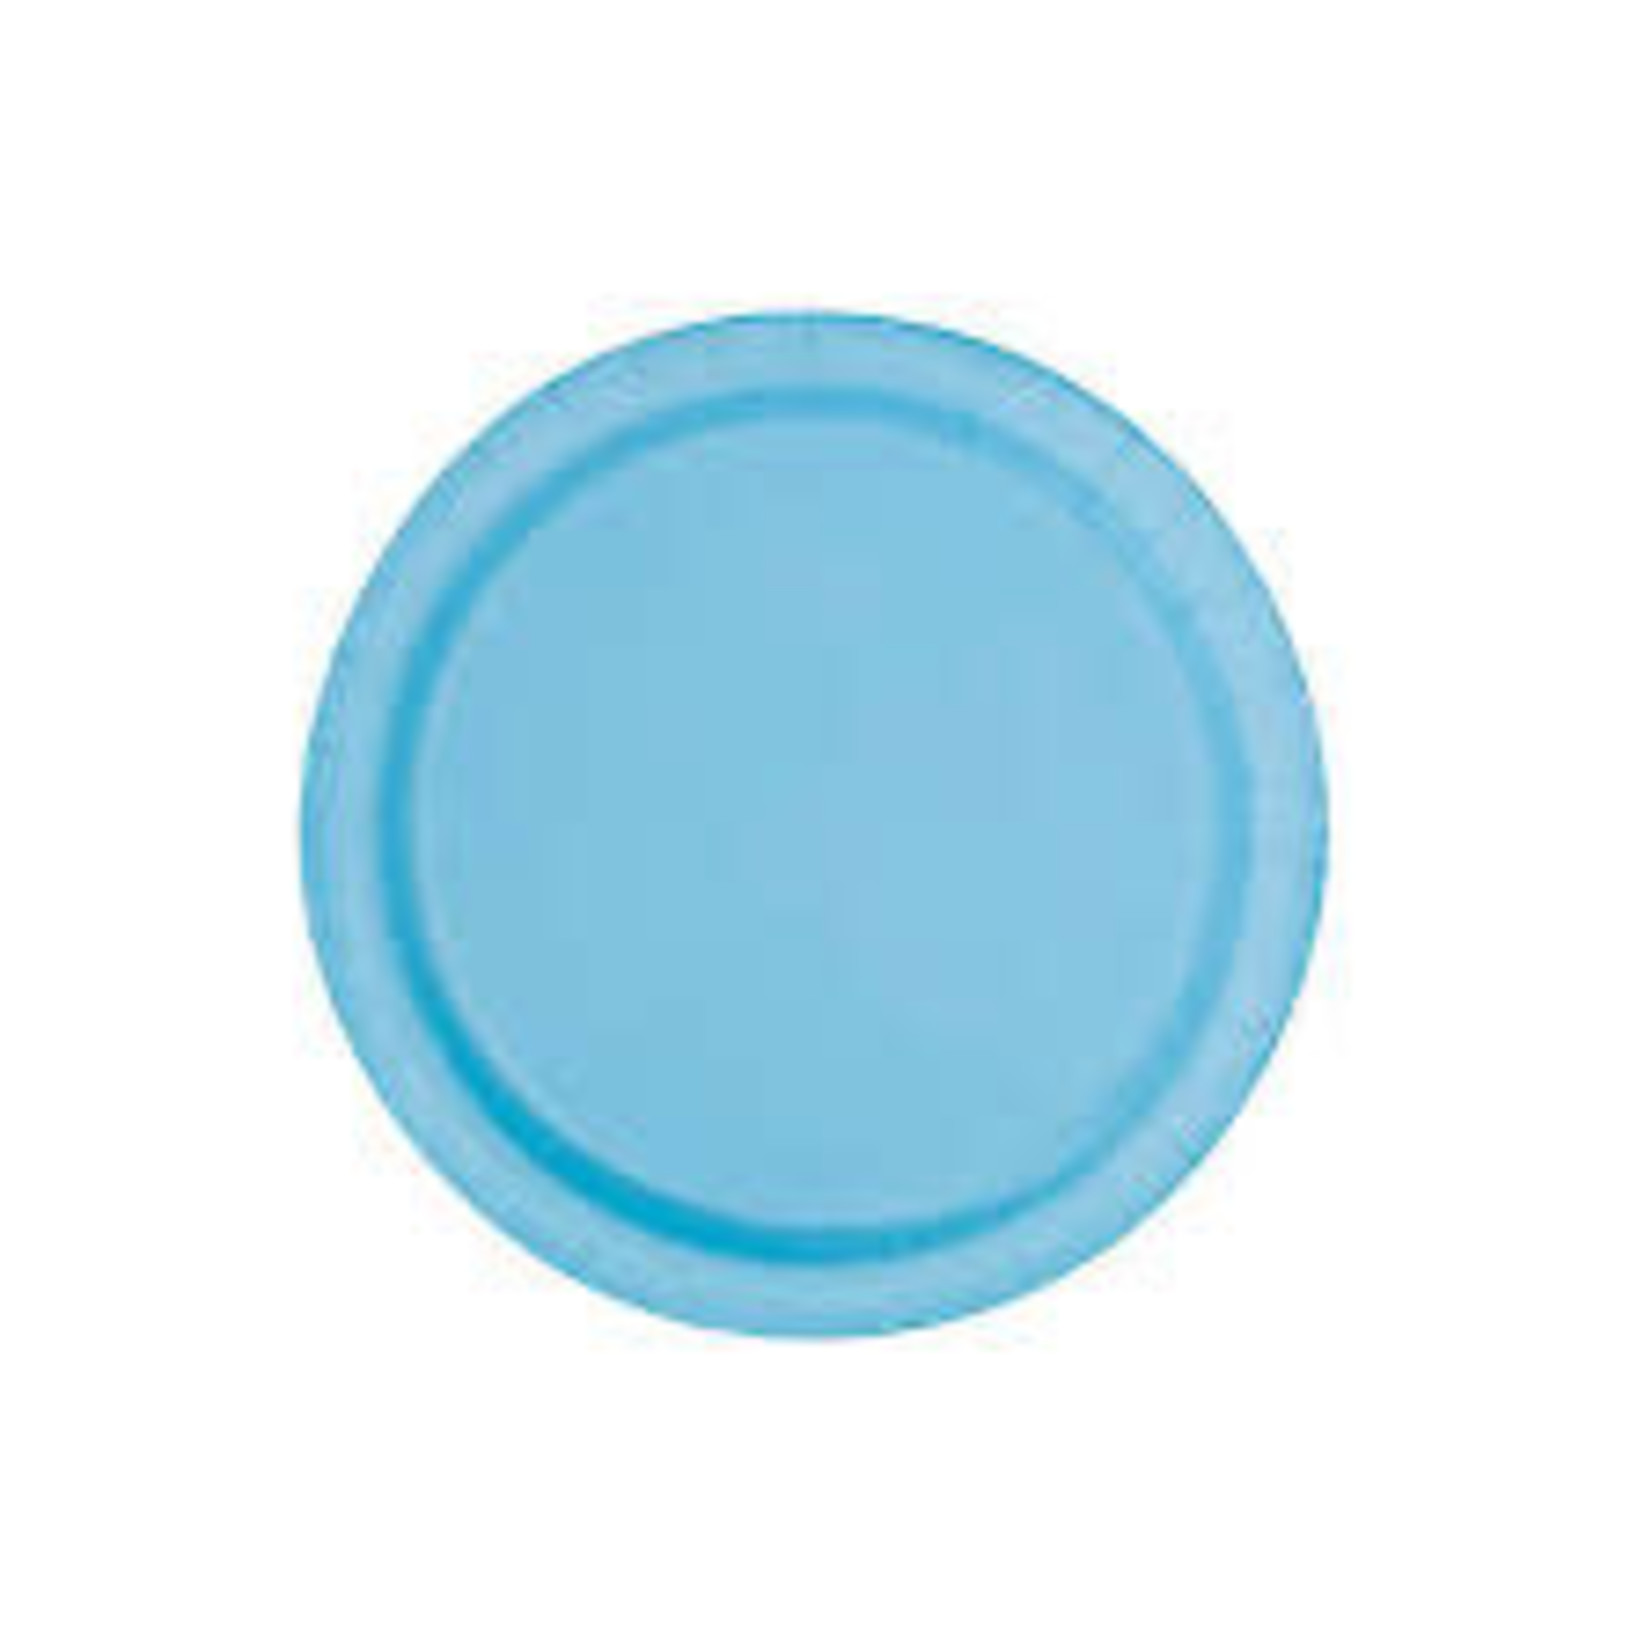 Powder Blue Solid Round 7" Dessert Plates  20ct